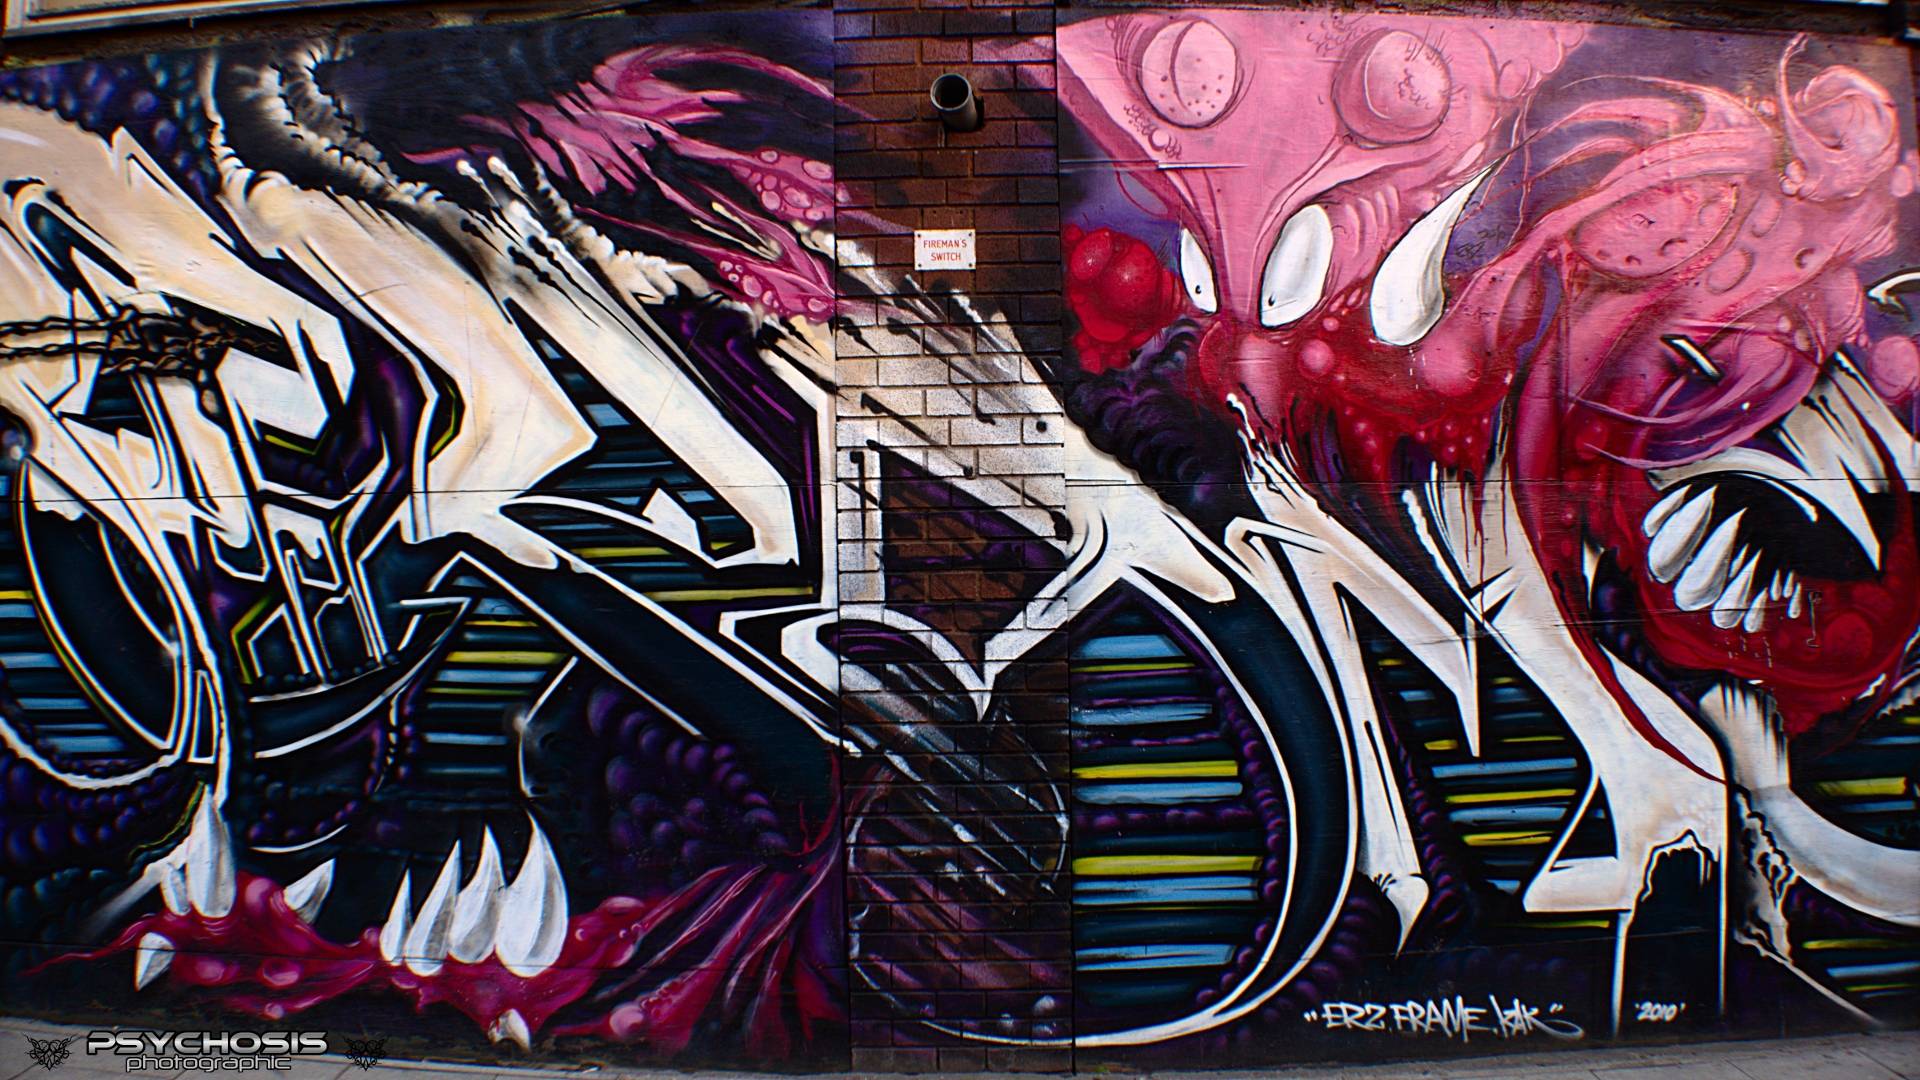 Wallpaper Boots Street Art Graffiti Photorgraphy Urban. Part